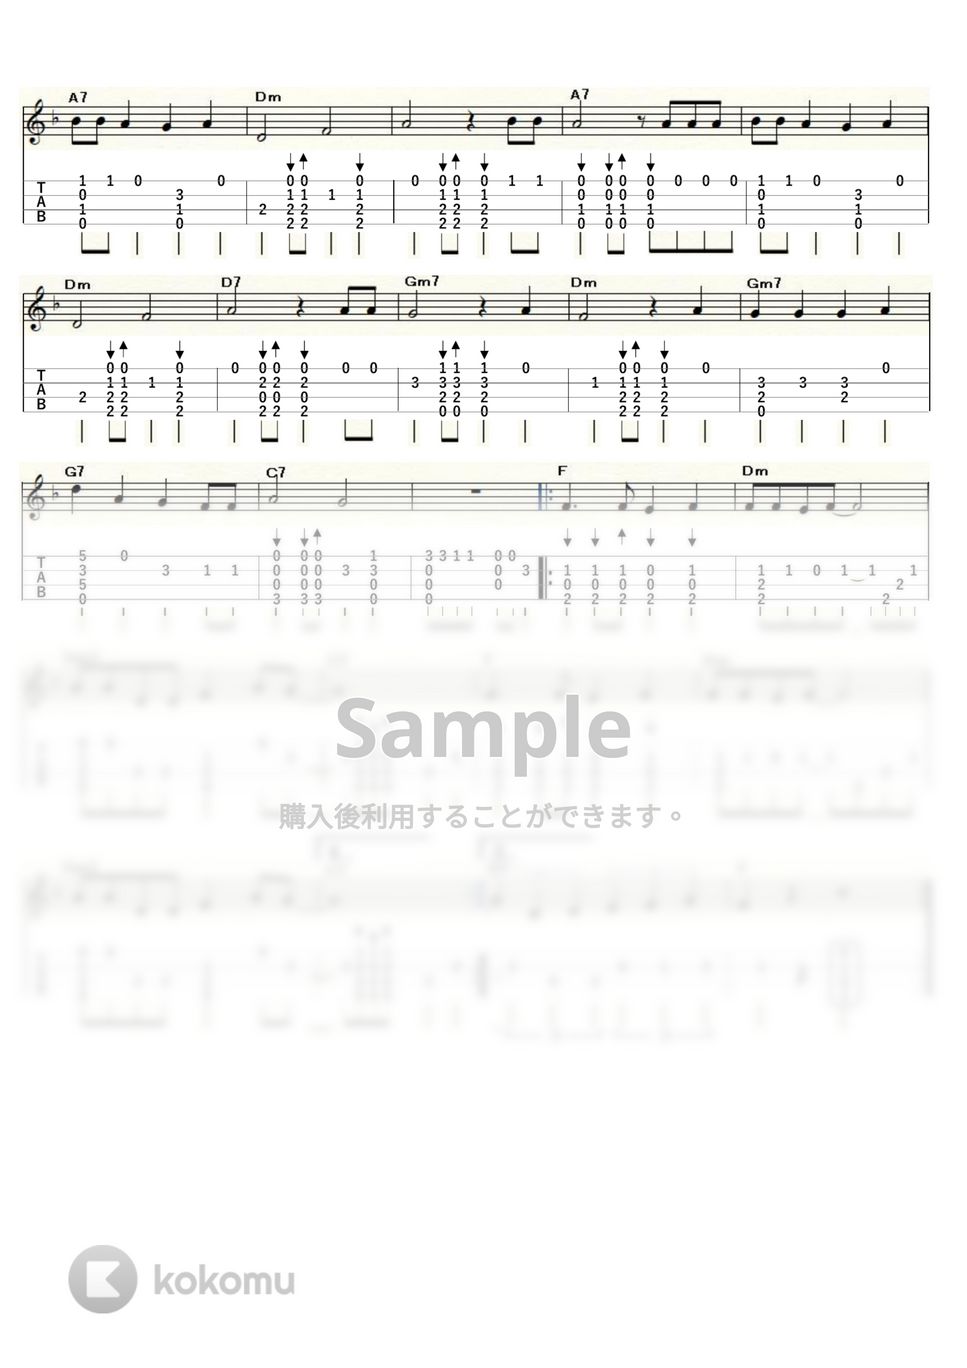 竹内まりや - 不思議なピーチパイ (ｳｸﾚﾚｿﾛ / Low-G / 中級) by ukulelepapa